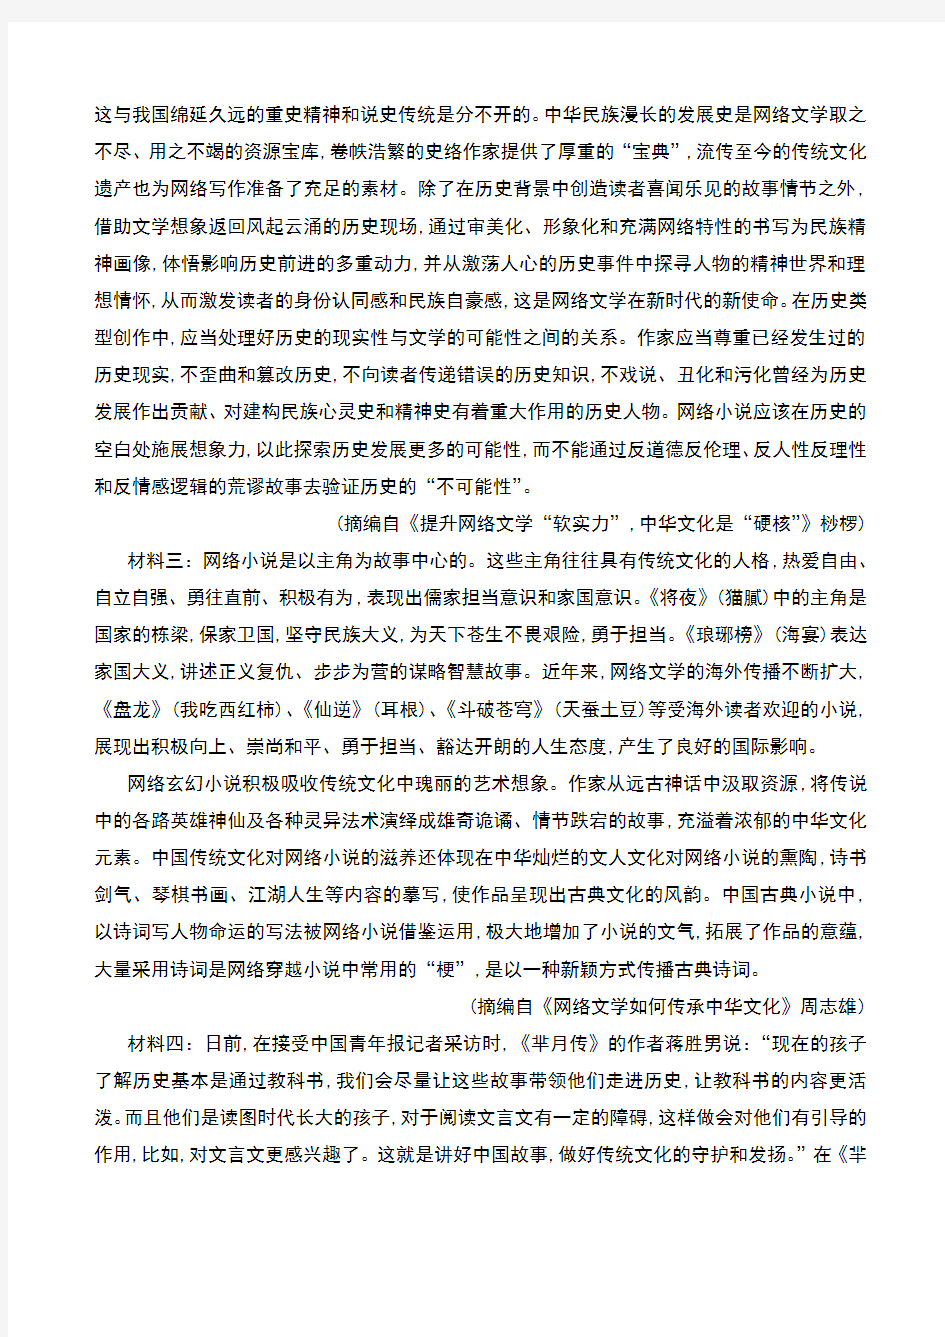 2020年2020届陕西省榆林市2017级高三高考第三次模拟考试语文试卷及答案